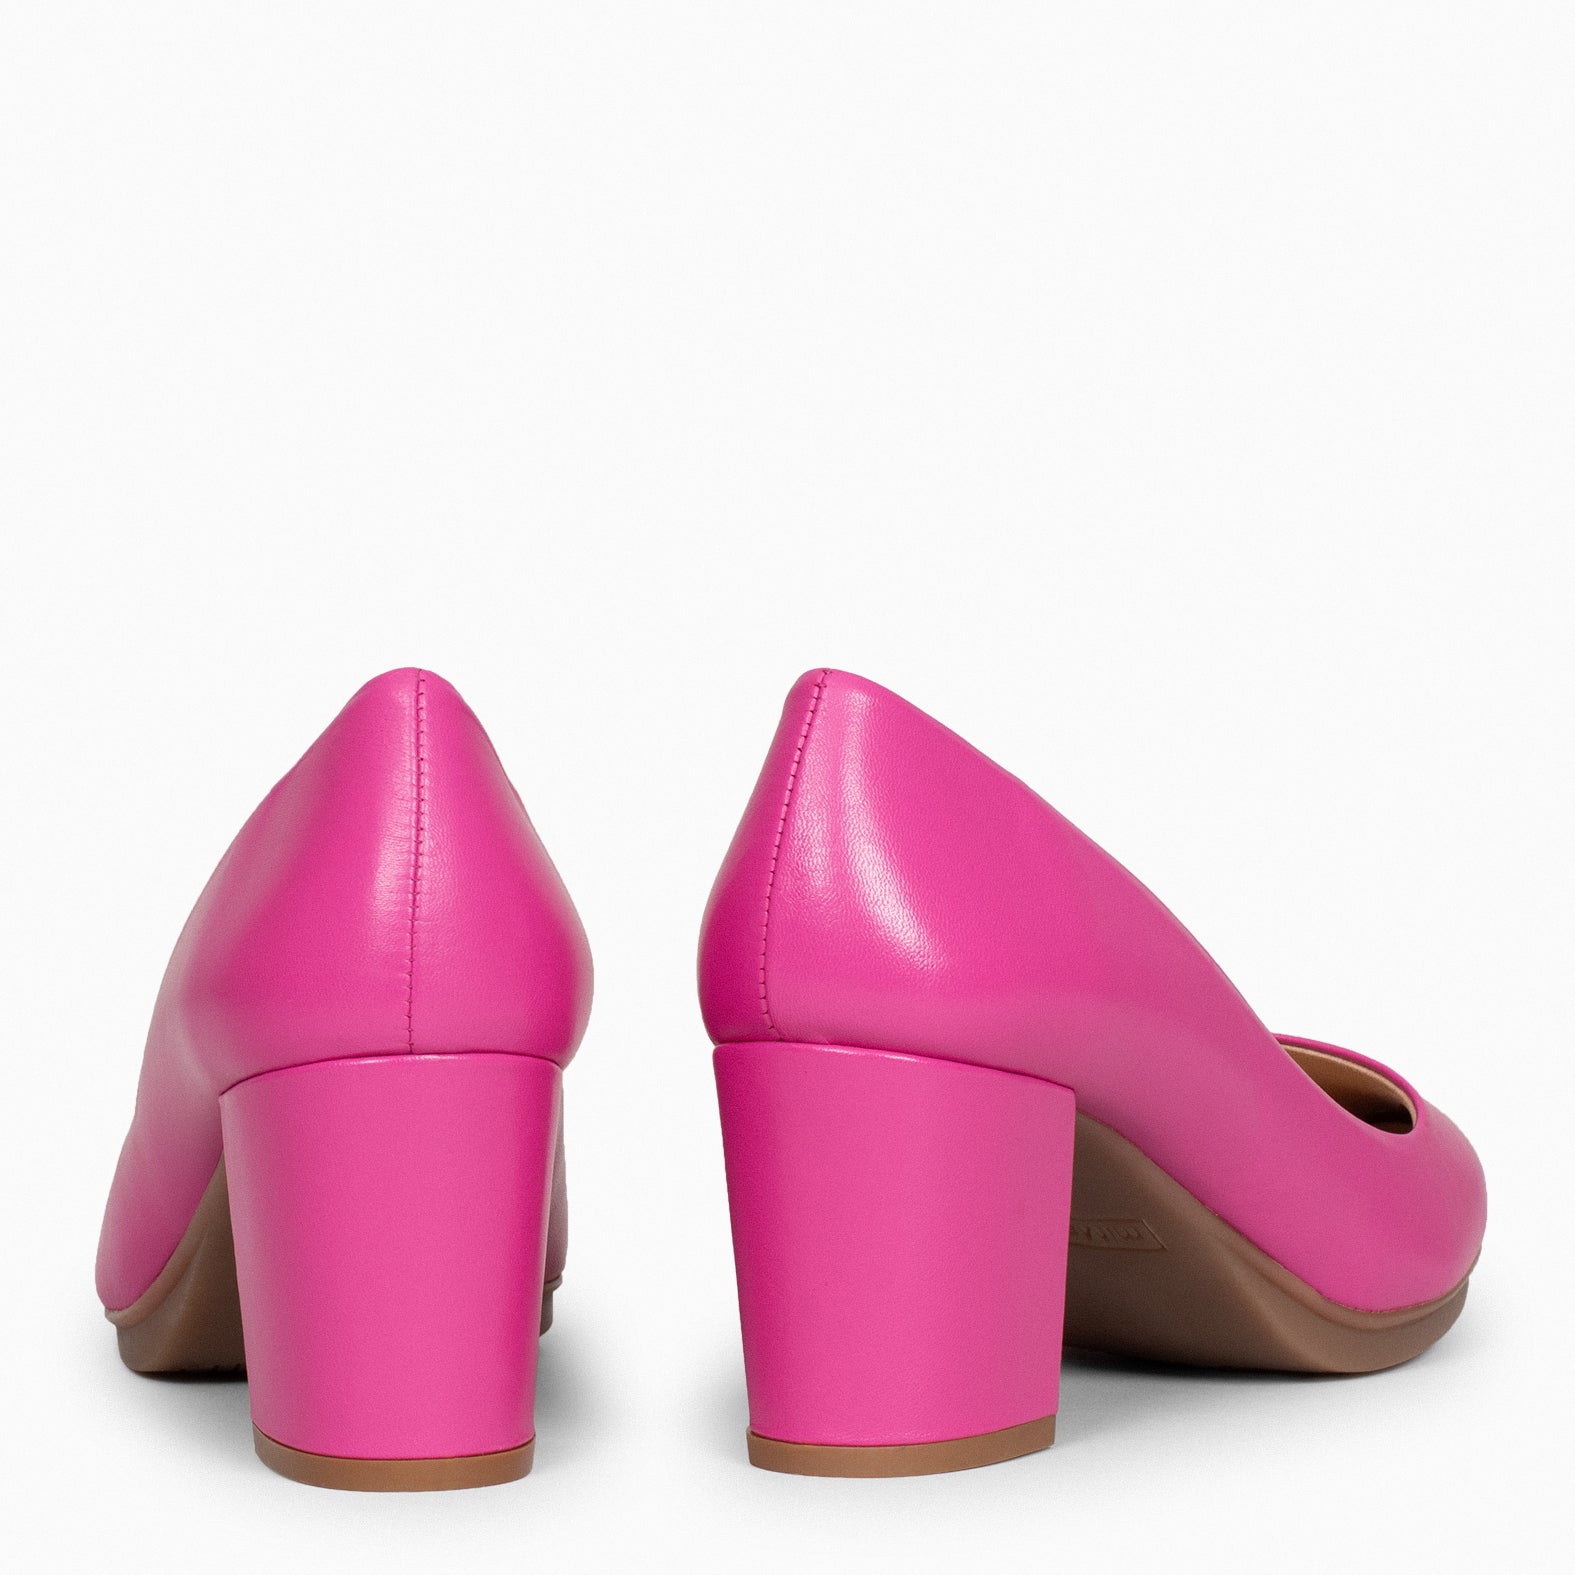 URBAN S SALON – FUCHSIA nappa leather mid heel